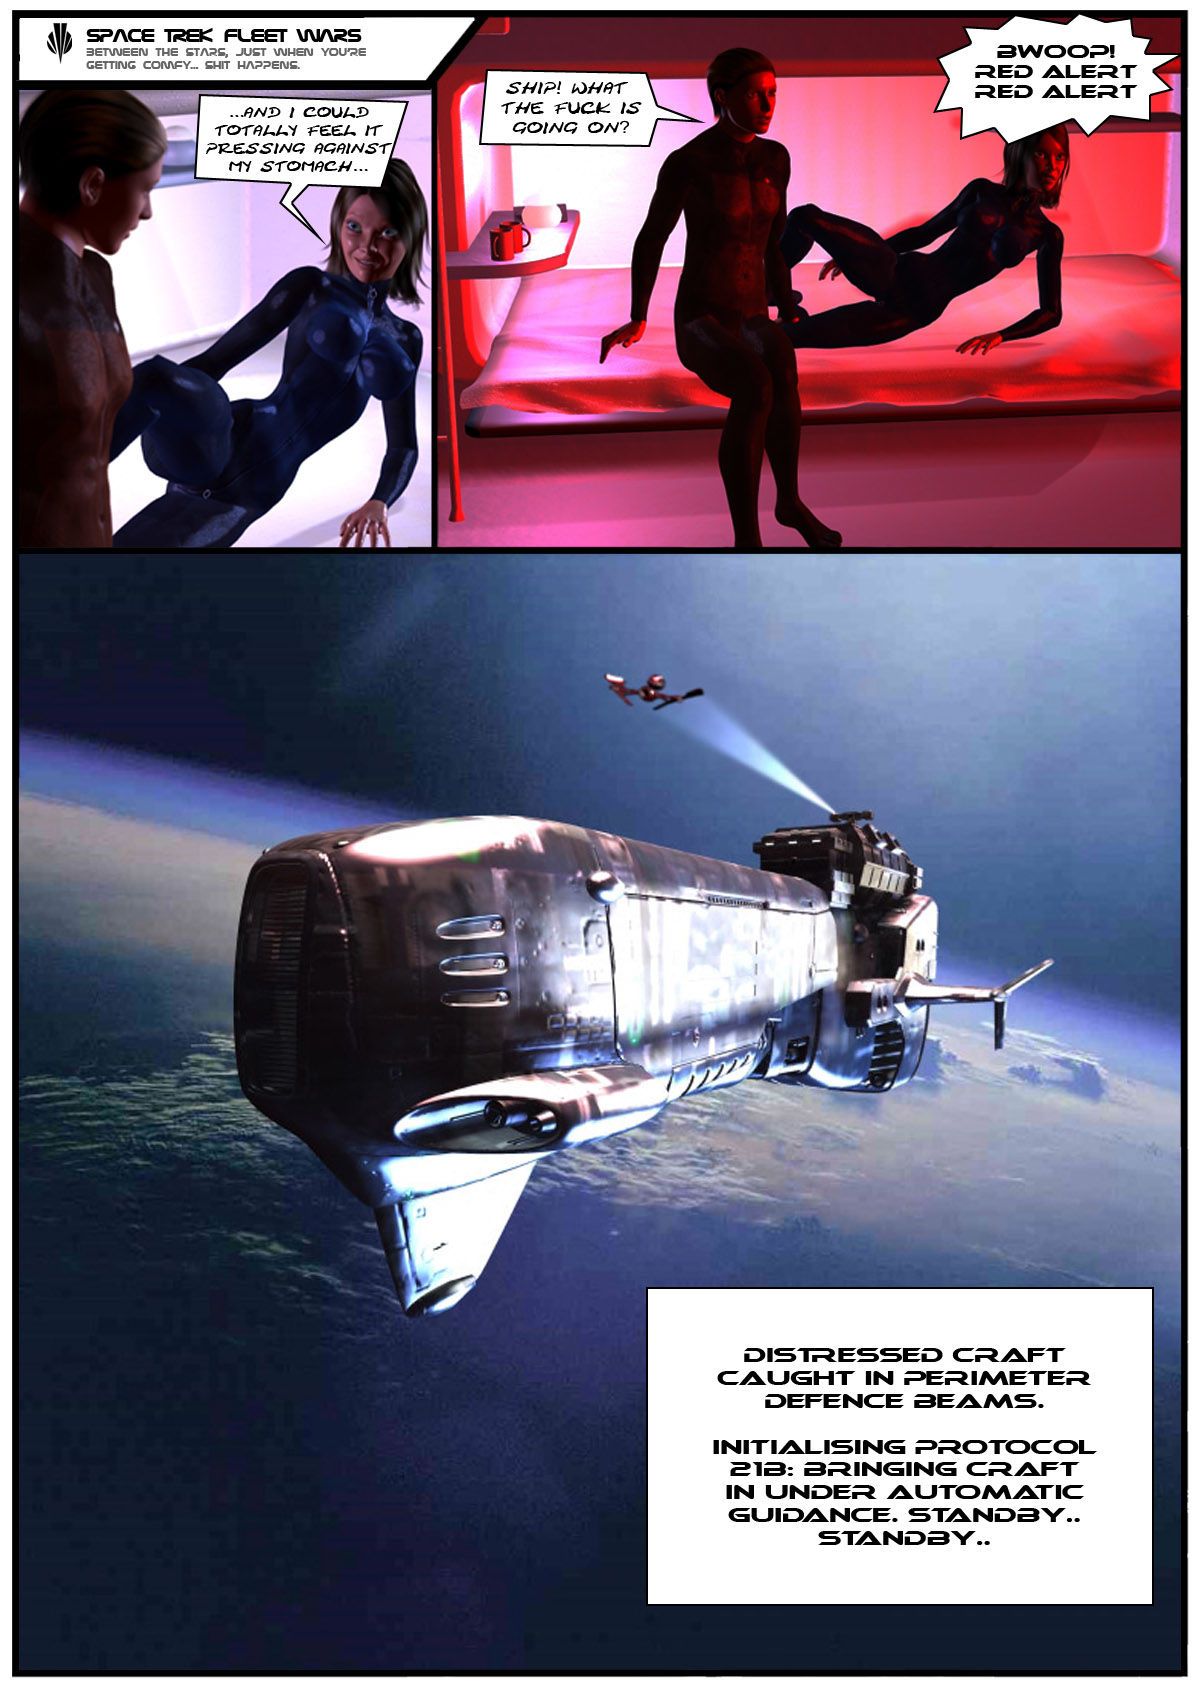 01 Space Trek Fleet Wars - part 2